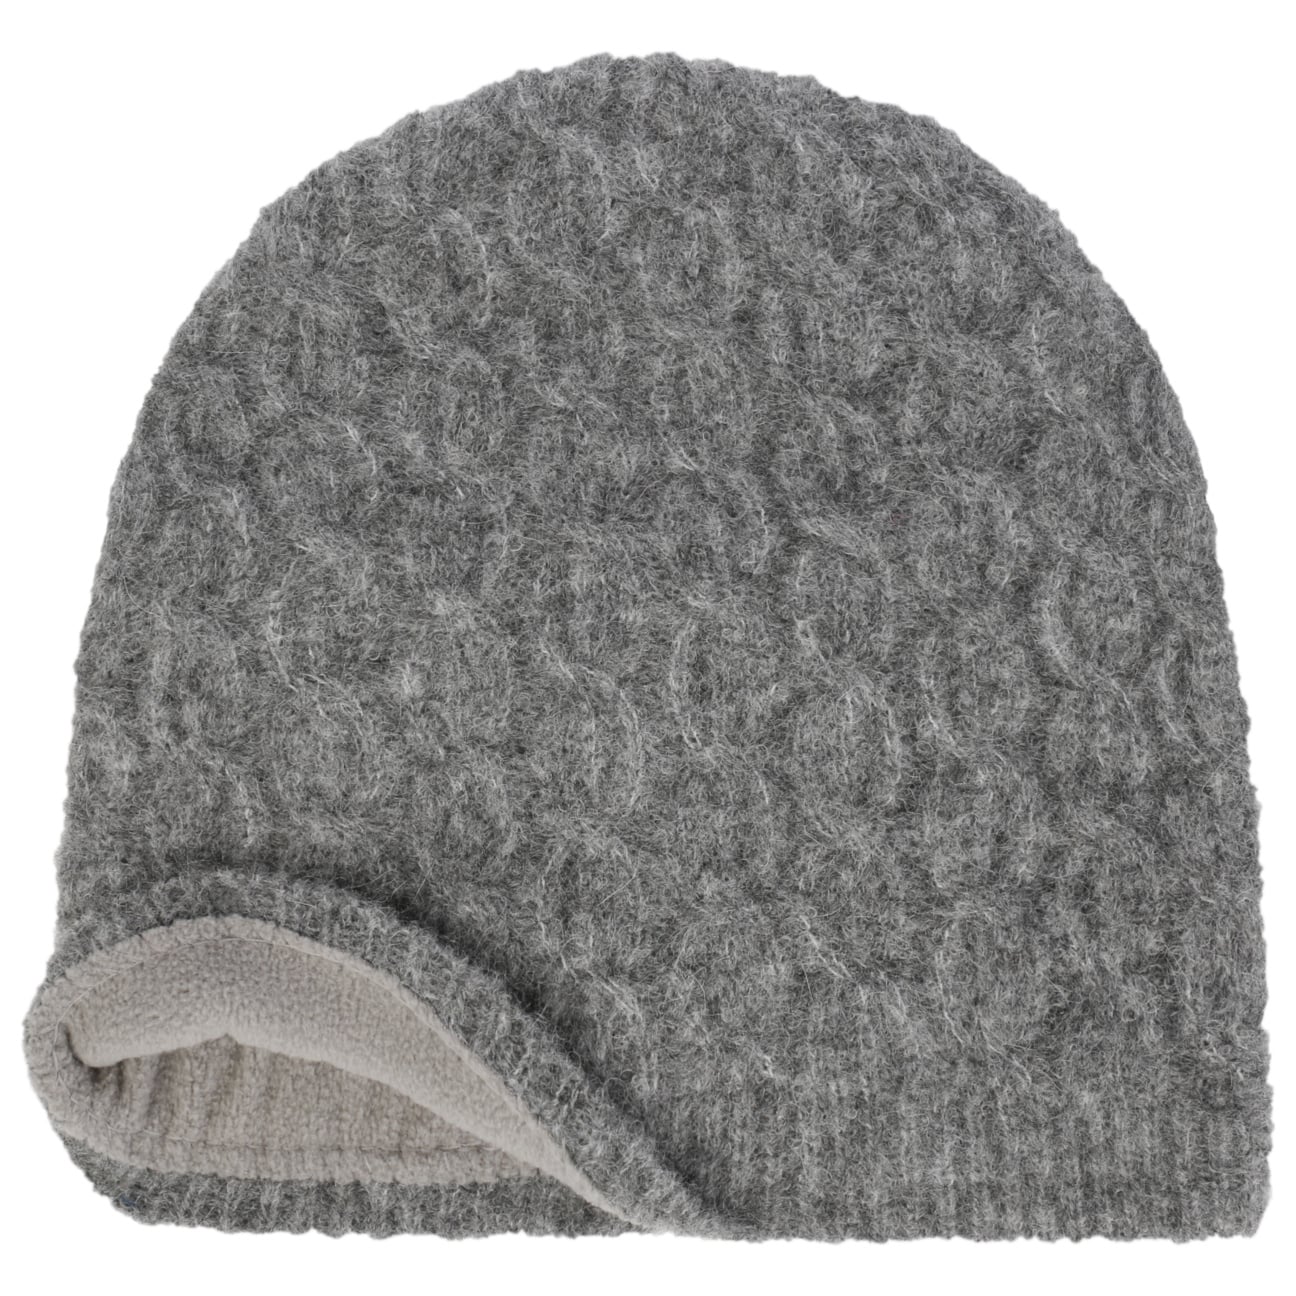 Majalisa Alpaca by Headsock € 62,95 Beanie Seeberger Hat 